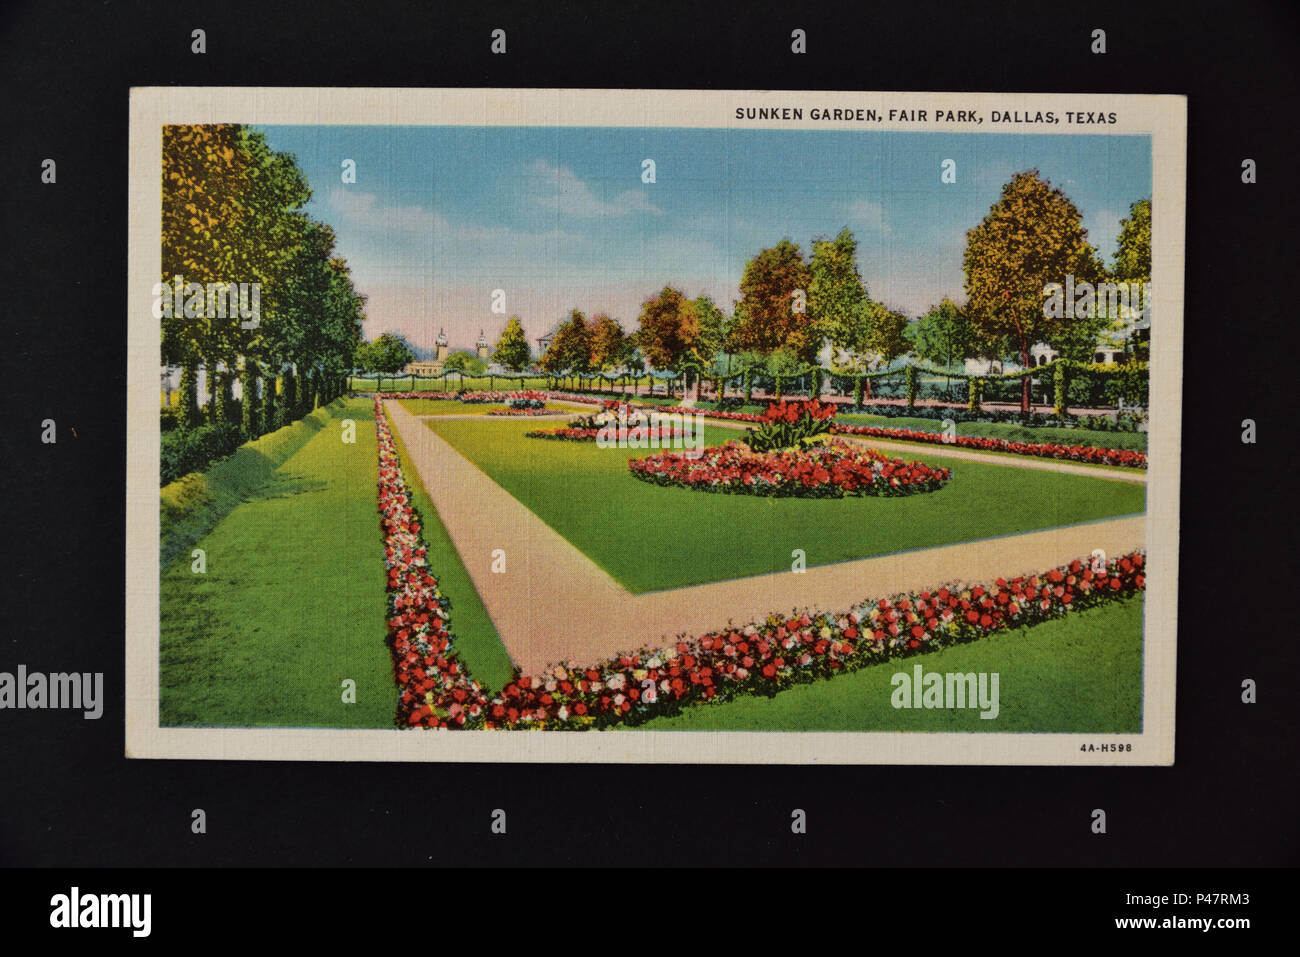 Foto von 1930er/1940er Jahre amerikanische Farbe Postkarte mit der Darstellung der versunkene Garten, Fair Park, Dallas, Texas, auf schwarzem Hintergrund Stockfoto